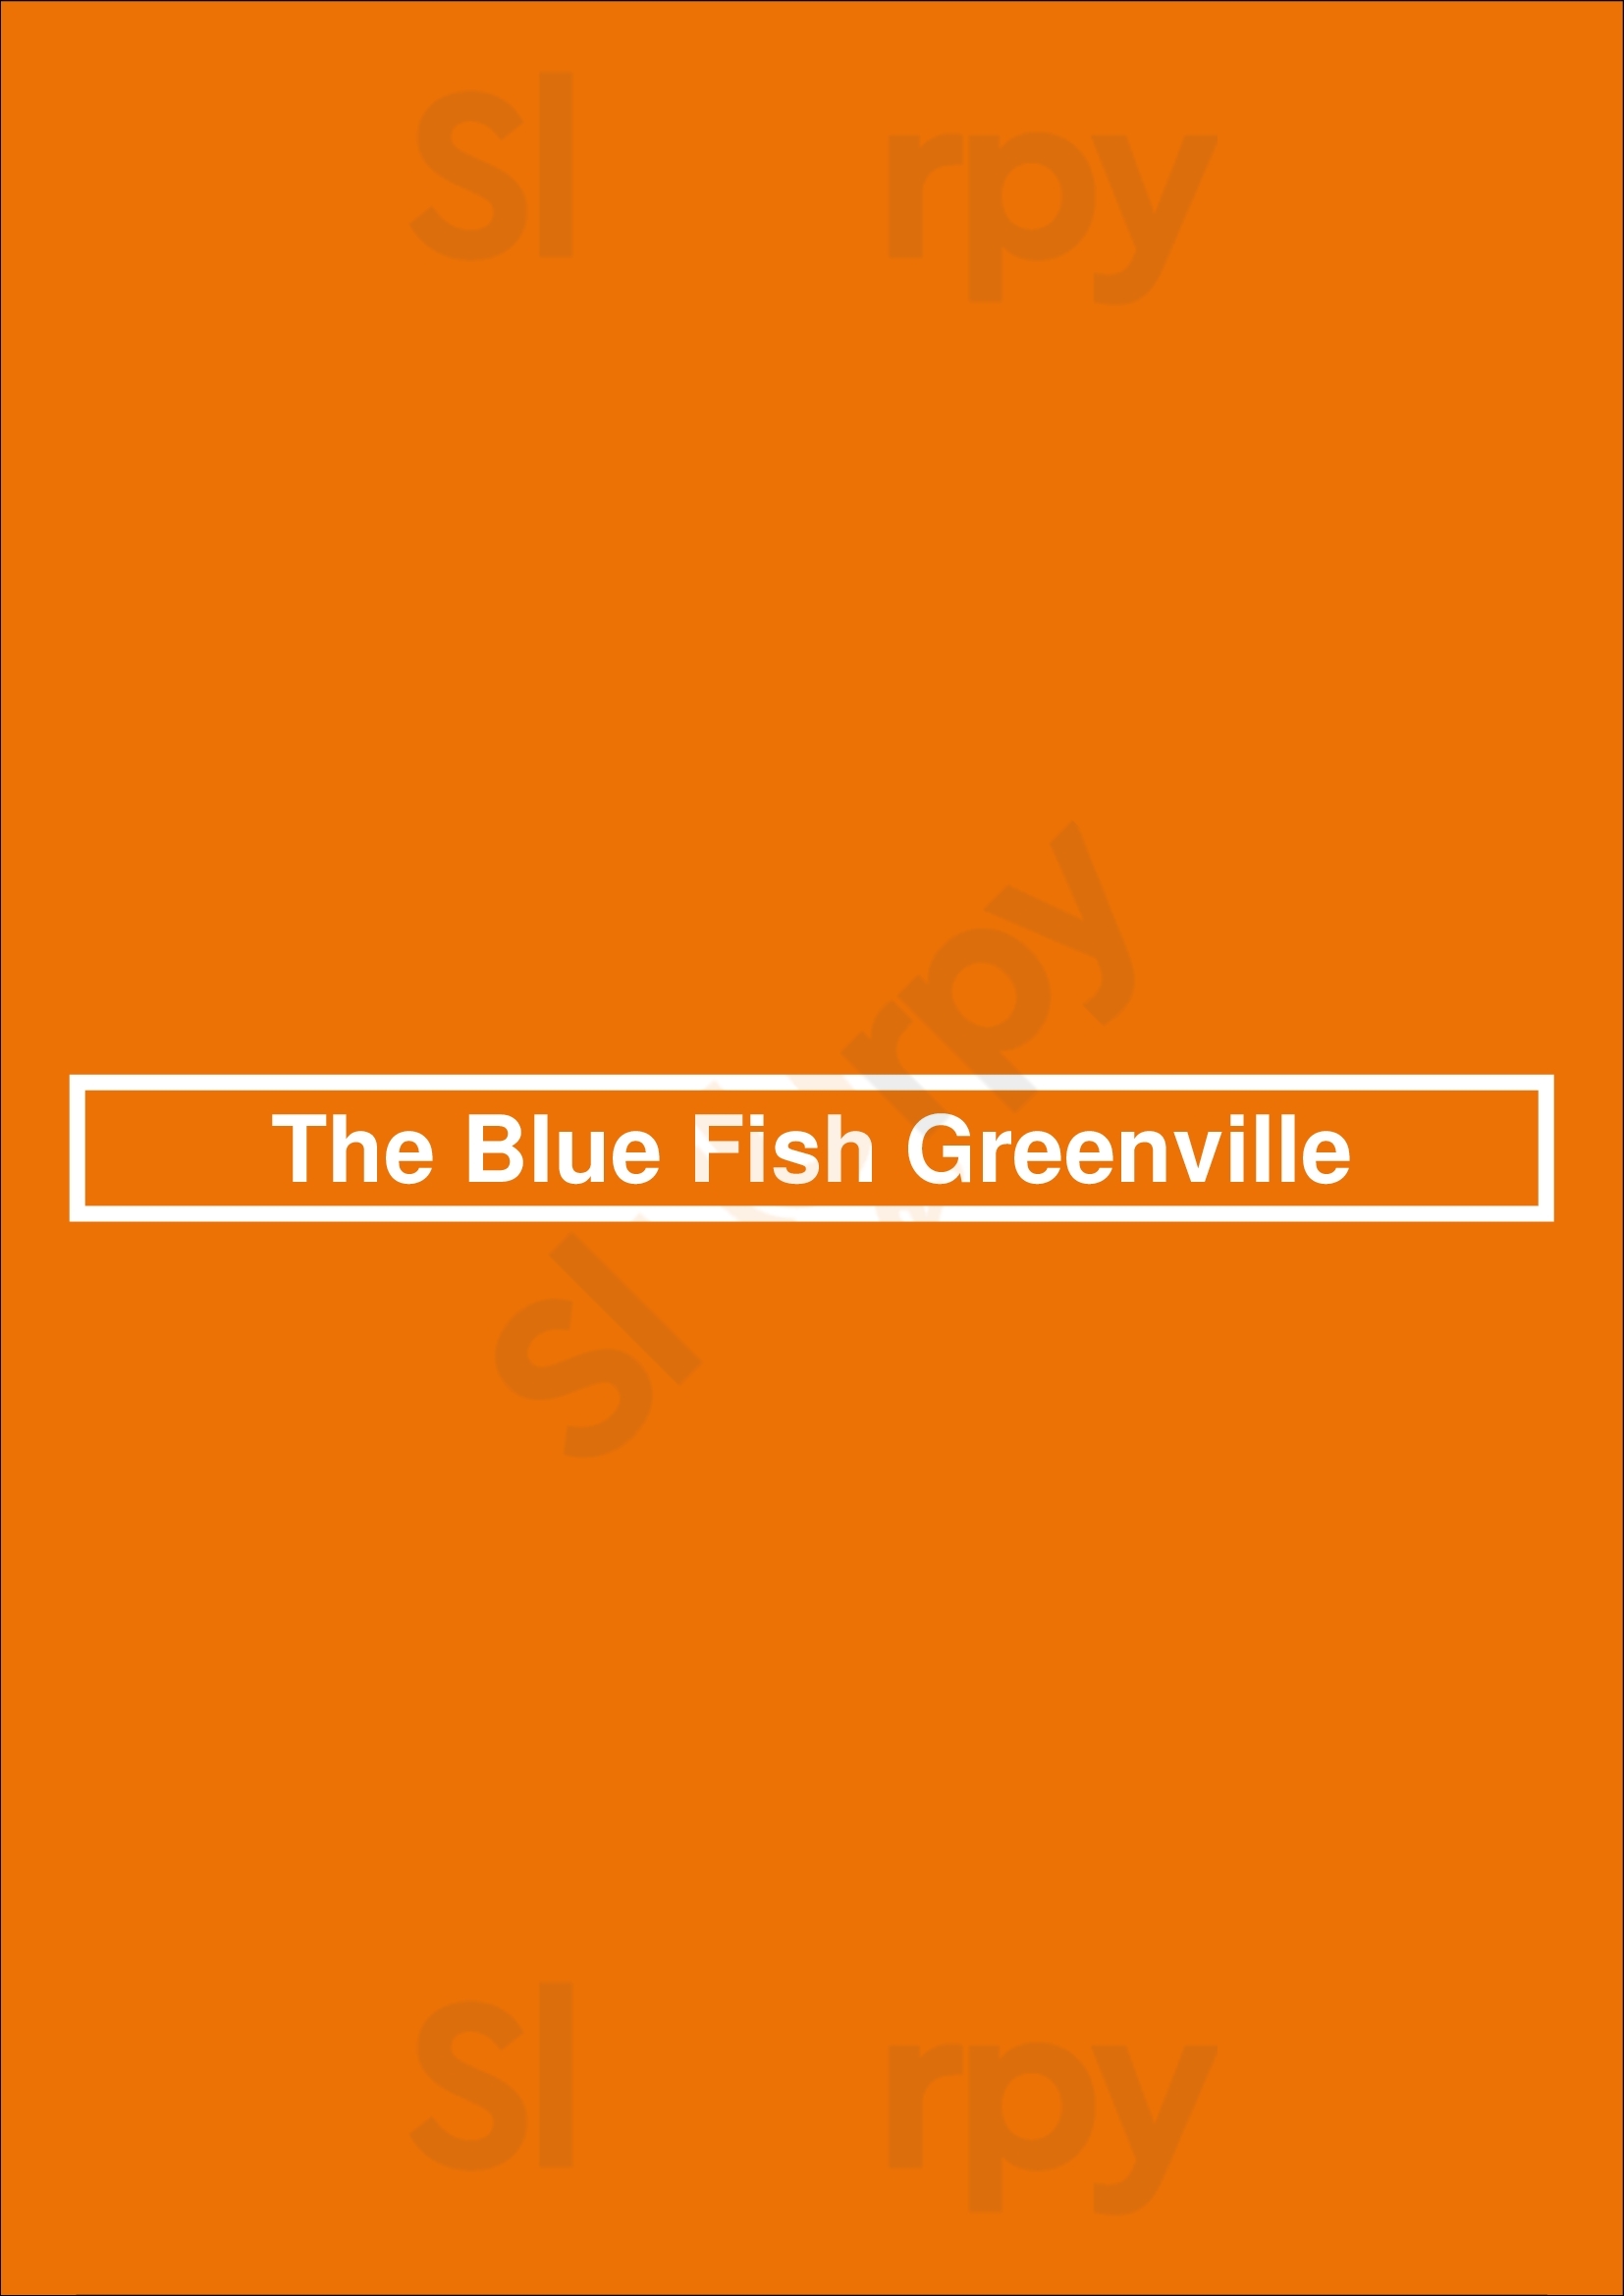 The Blue Fish Greenville Dallas Menu - 1